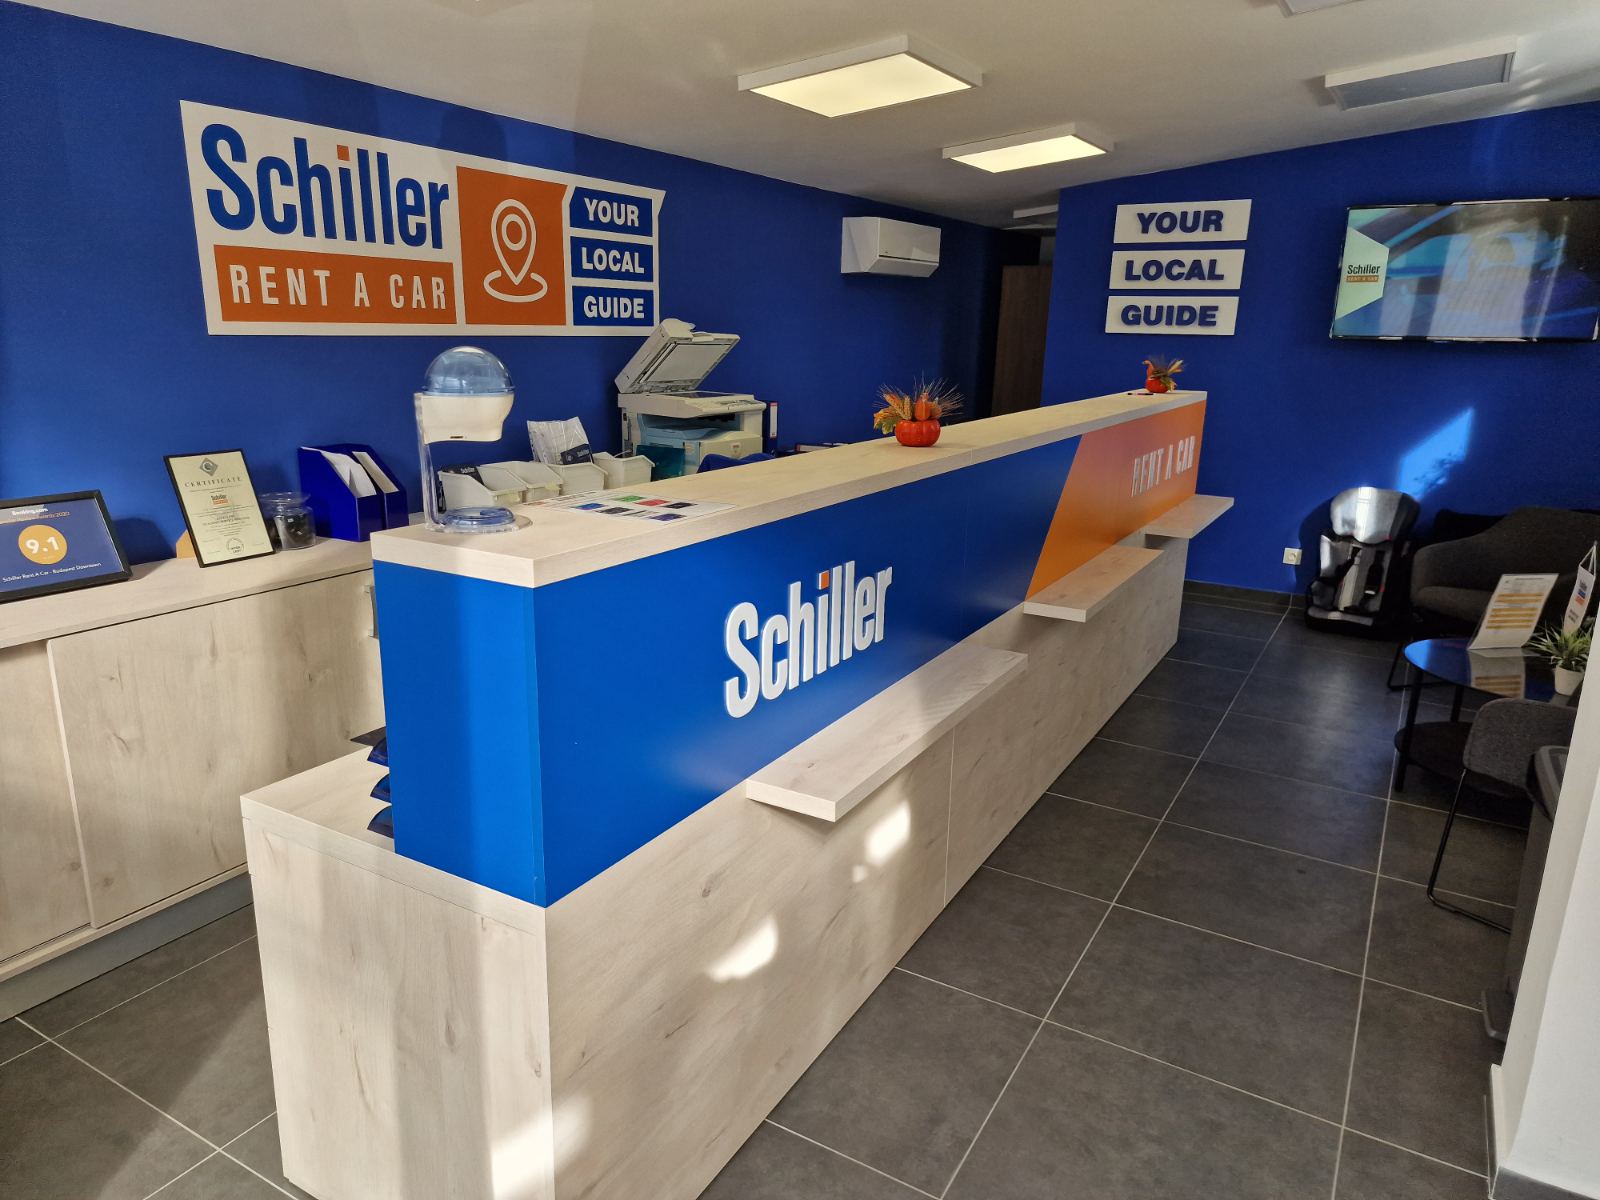 Schiller – Rent a car